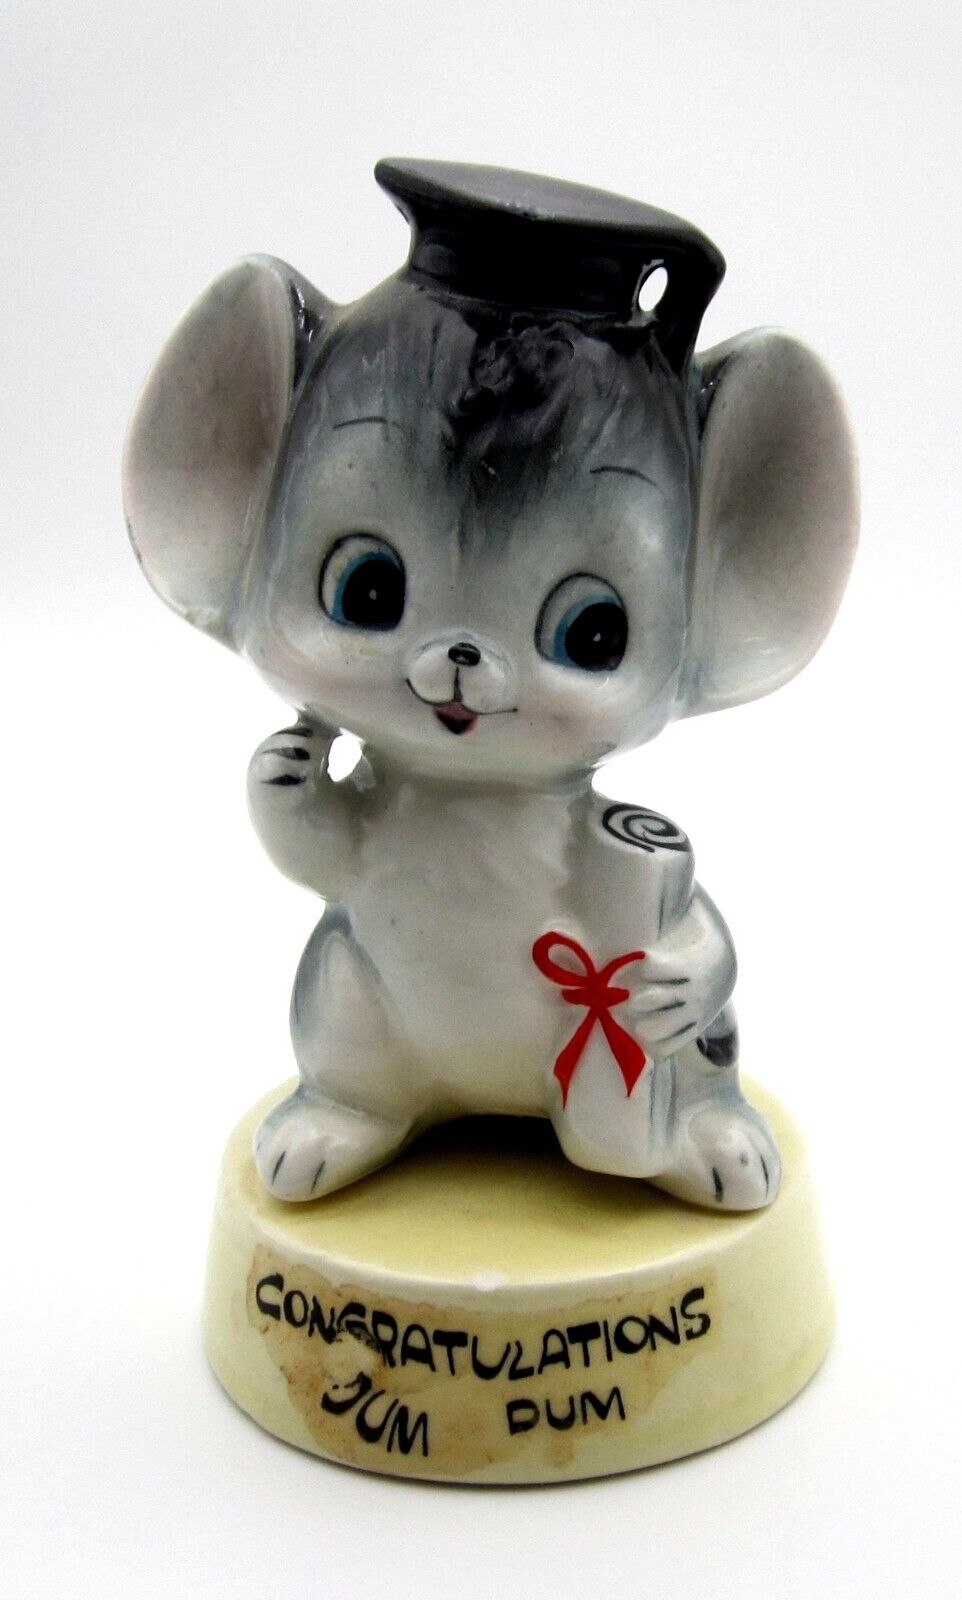 Anthropomorphic Vintage Ceramic Mouse Graduation Congratulations Dum Dum Japan